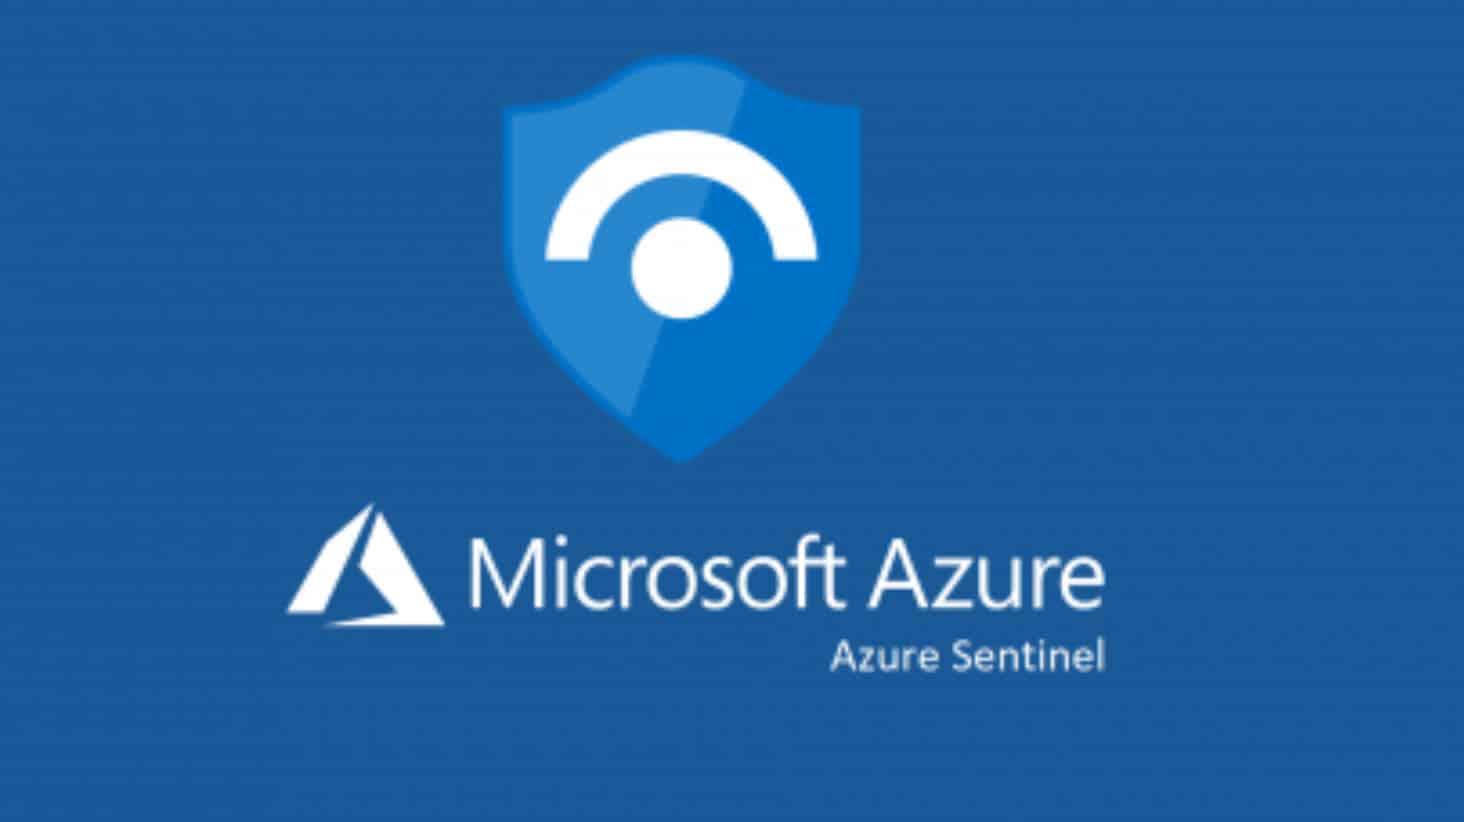 Повысьте уровень безопасности с помощью сервиса Microsoft Azure Sentinel, ведь теперь он общедоступен